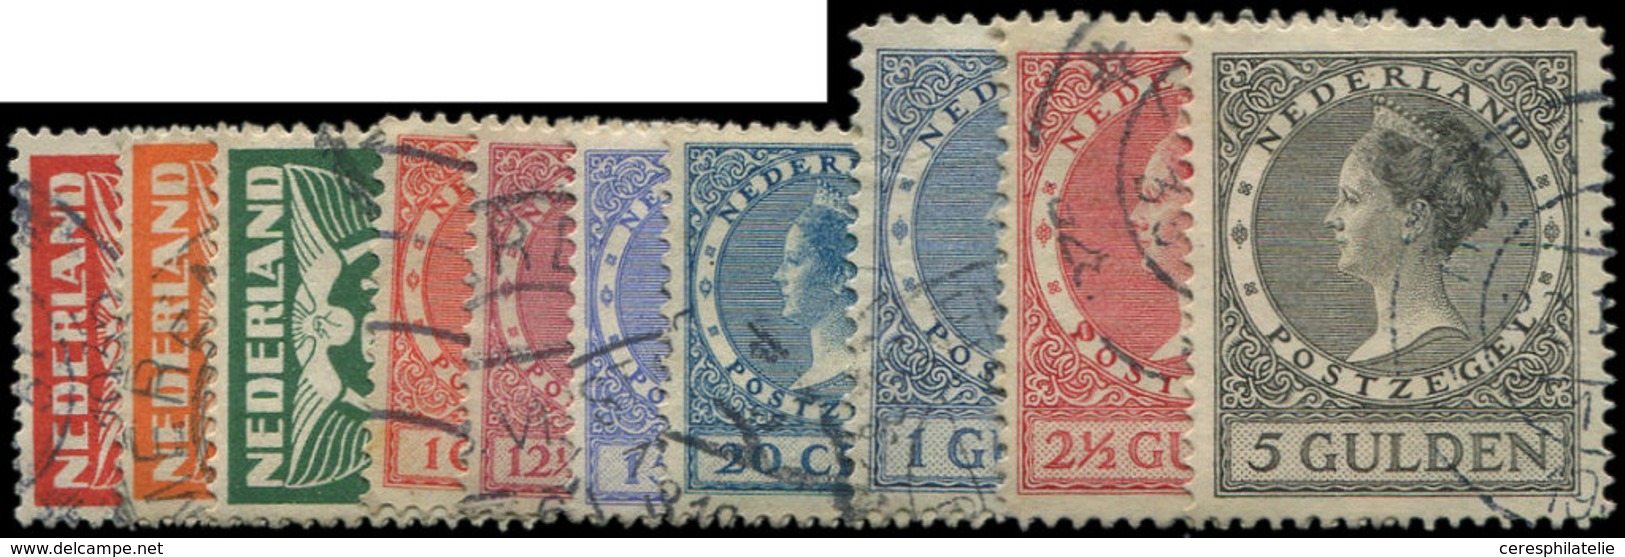 PAYS-BAS 133/53 : La Série Wilhelmine, TB - Used Stamps